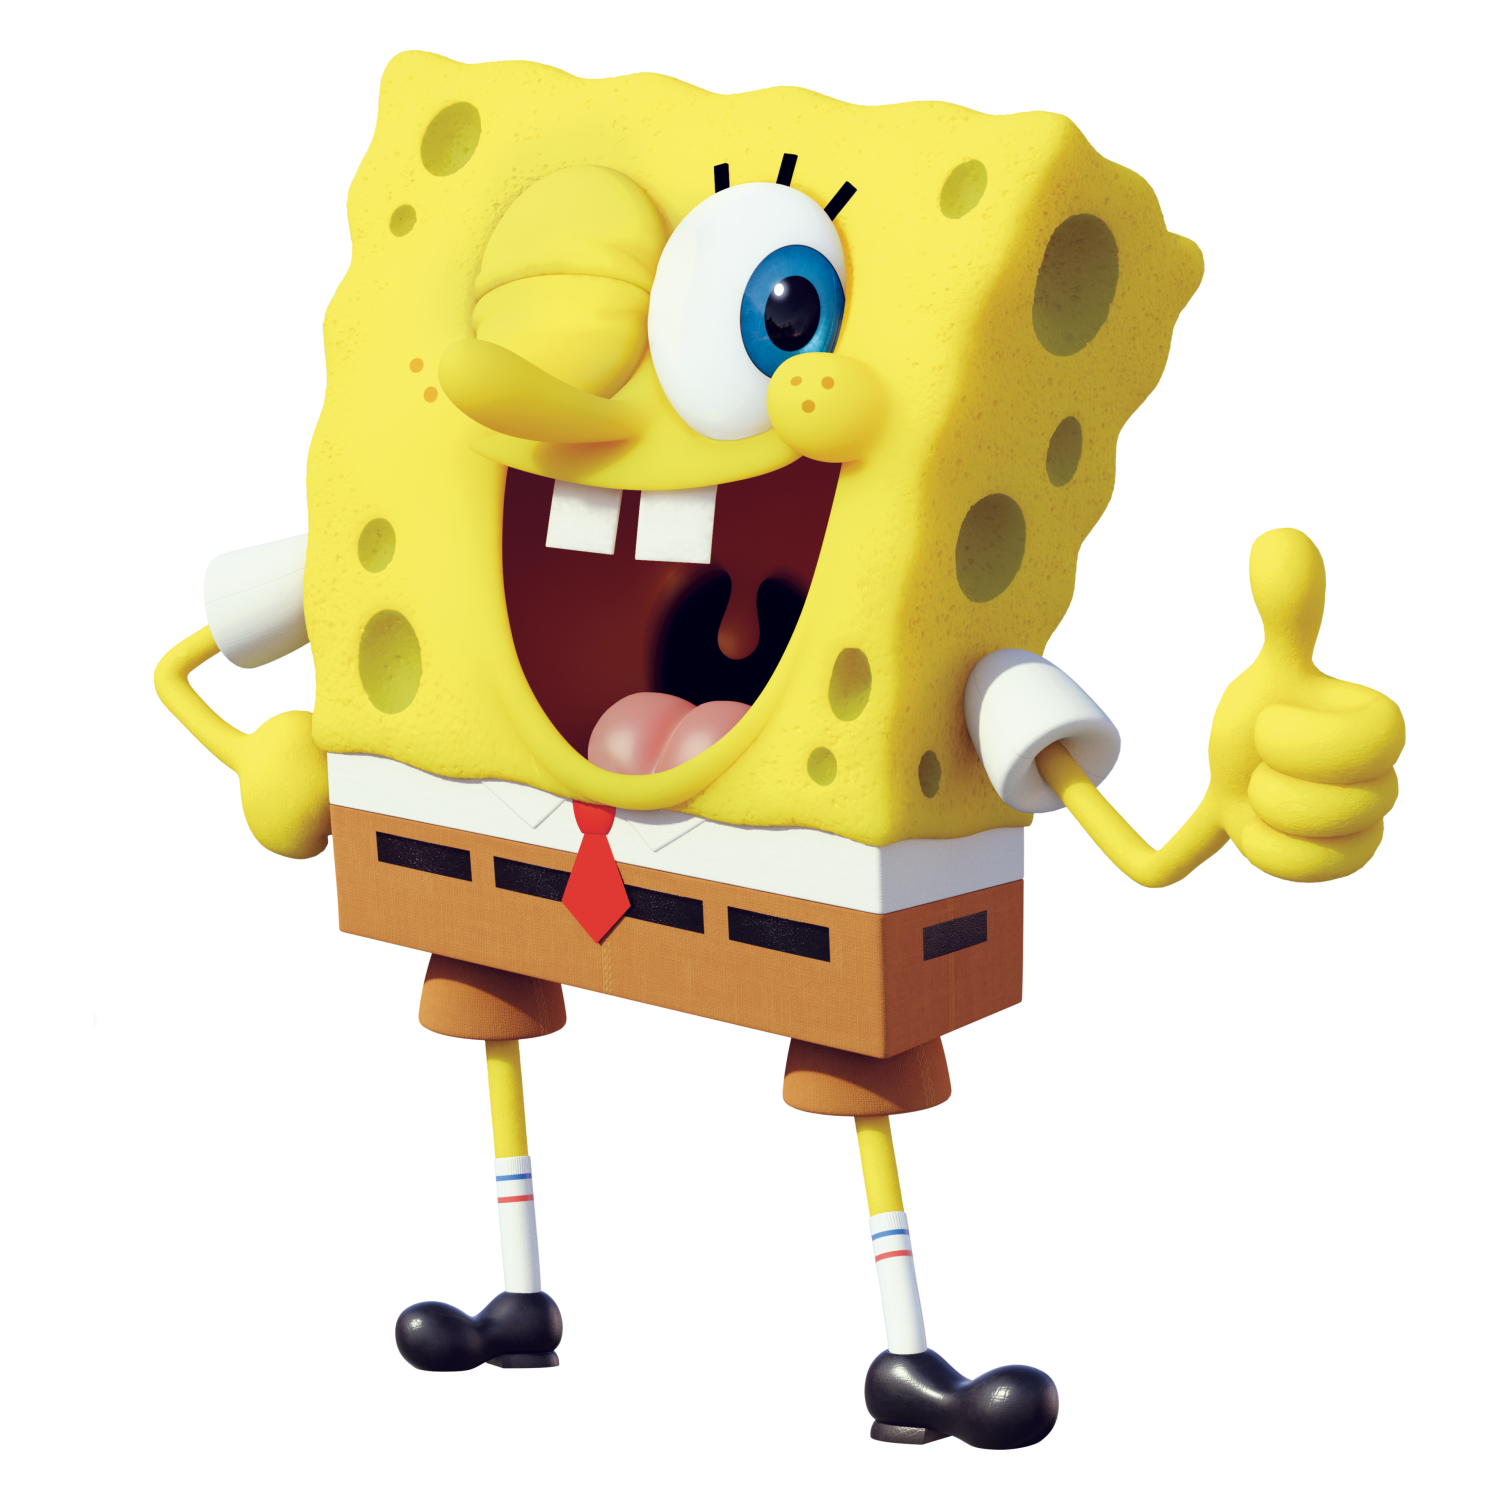 SpongeBob SquarePants – Wikipédia, a enciclopédia livre